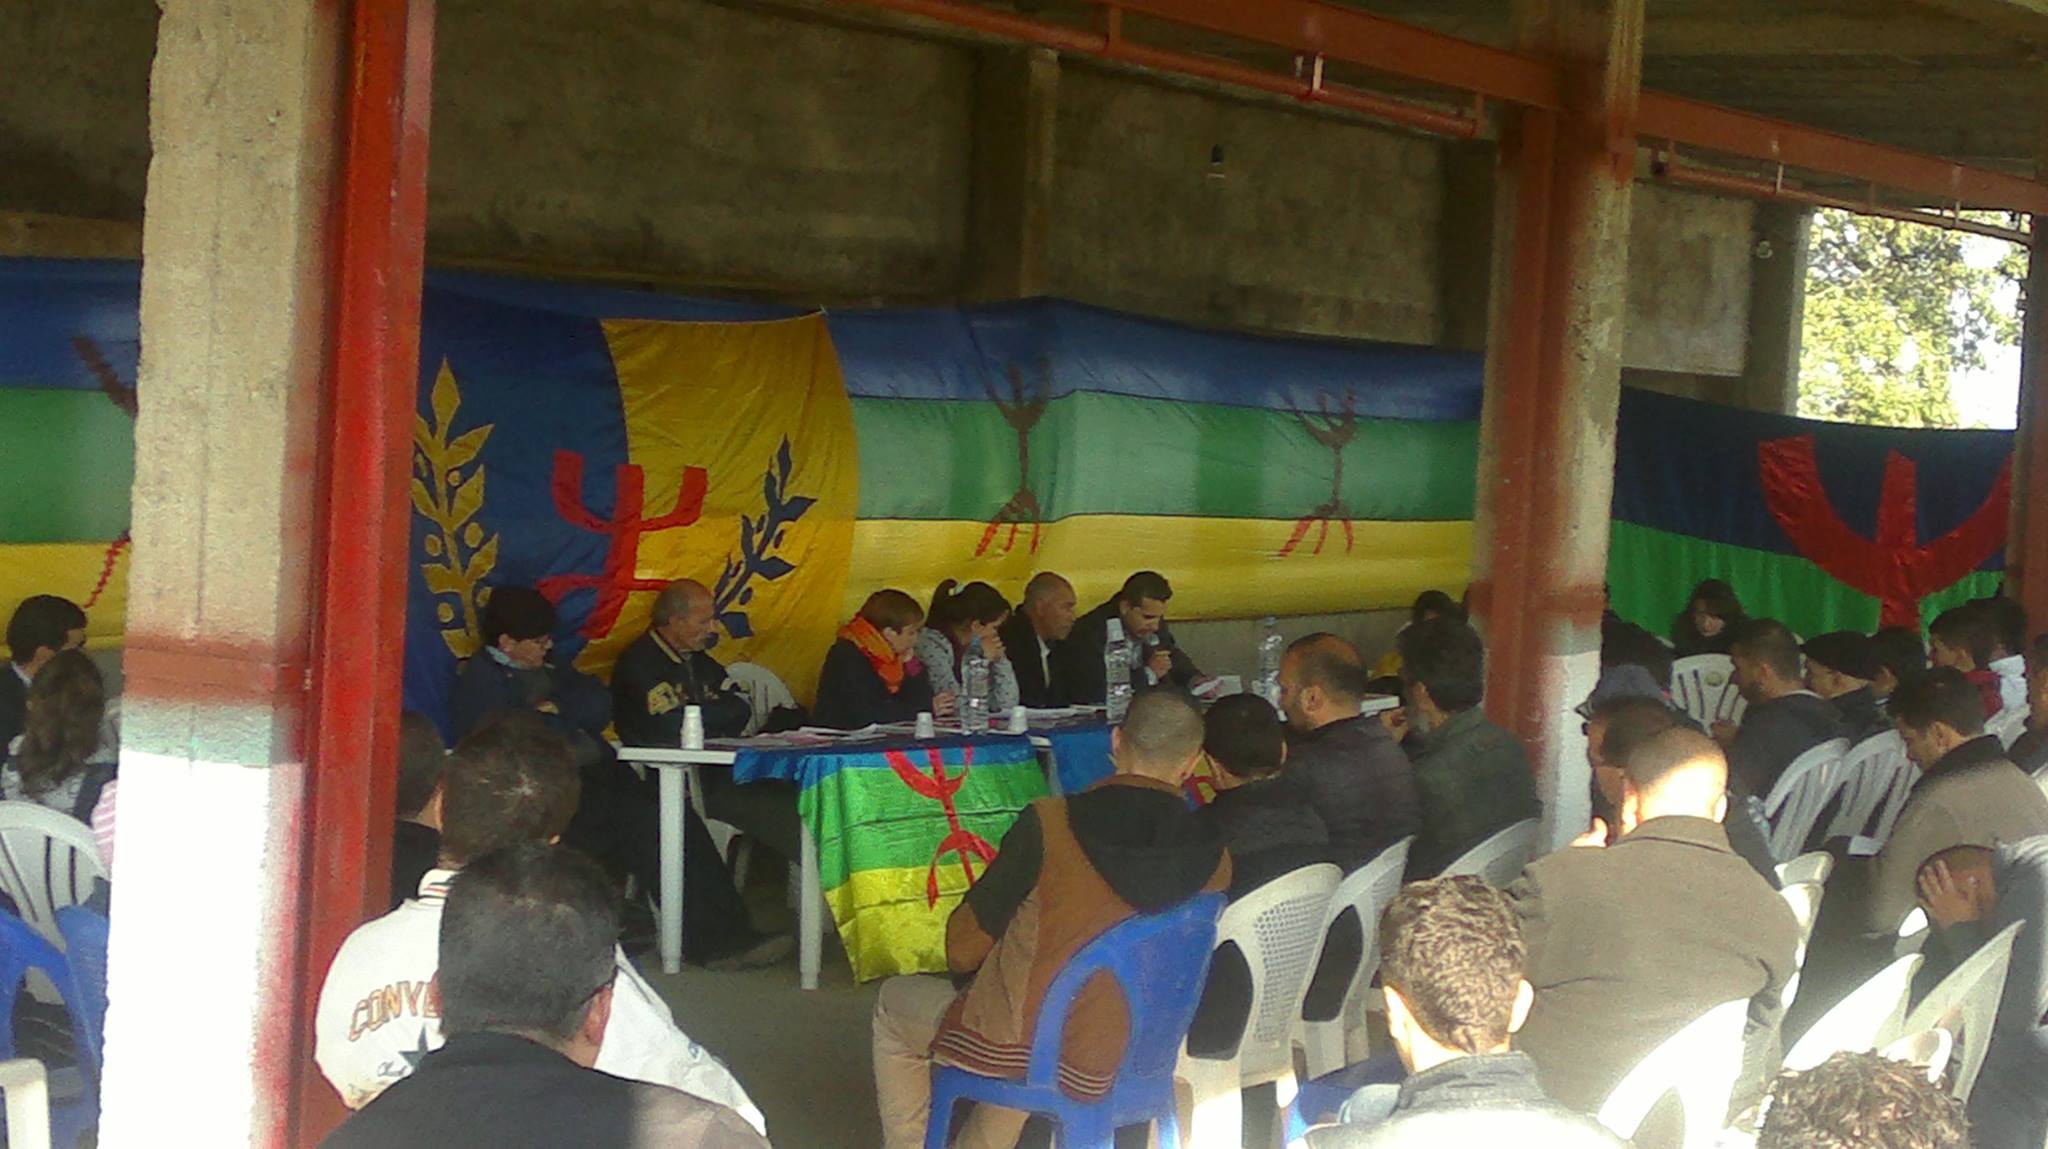 Le pré-congrès du MAK pour la région de Tizi Ouzou-Boumerdes s'est tenu aujourd'hui au village At Zellal